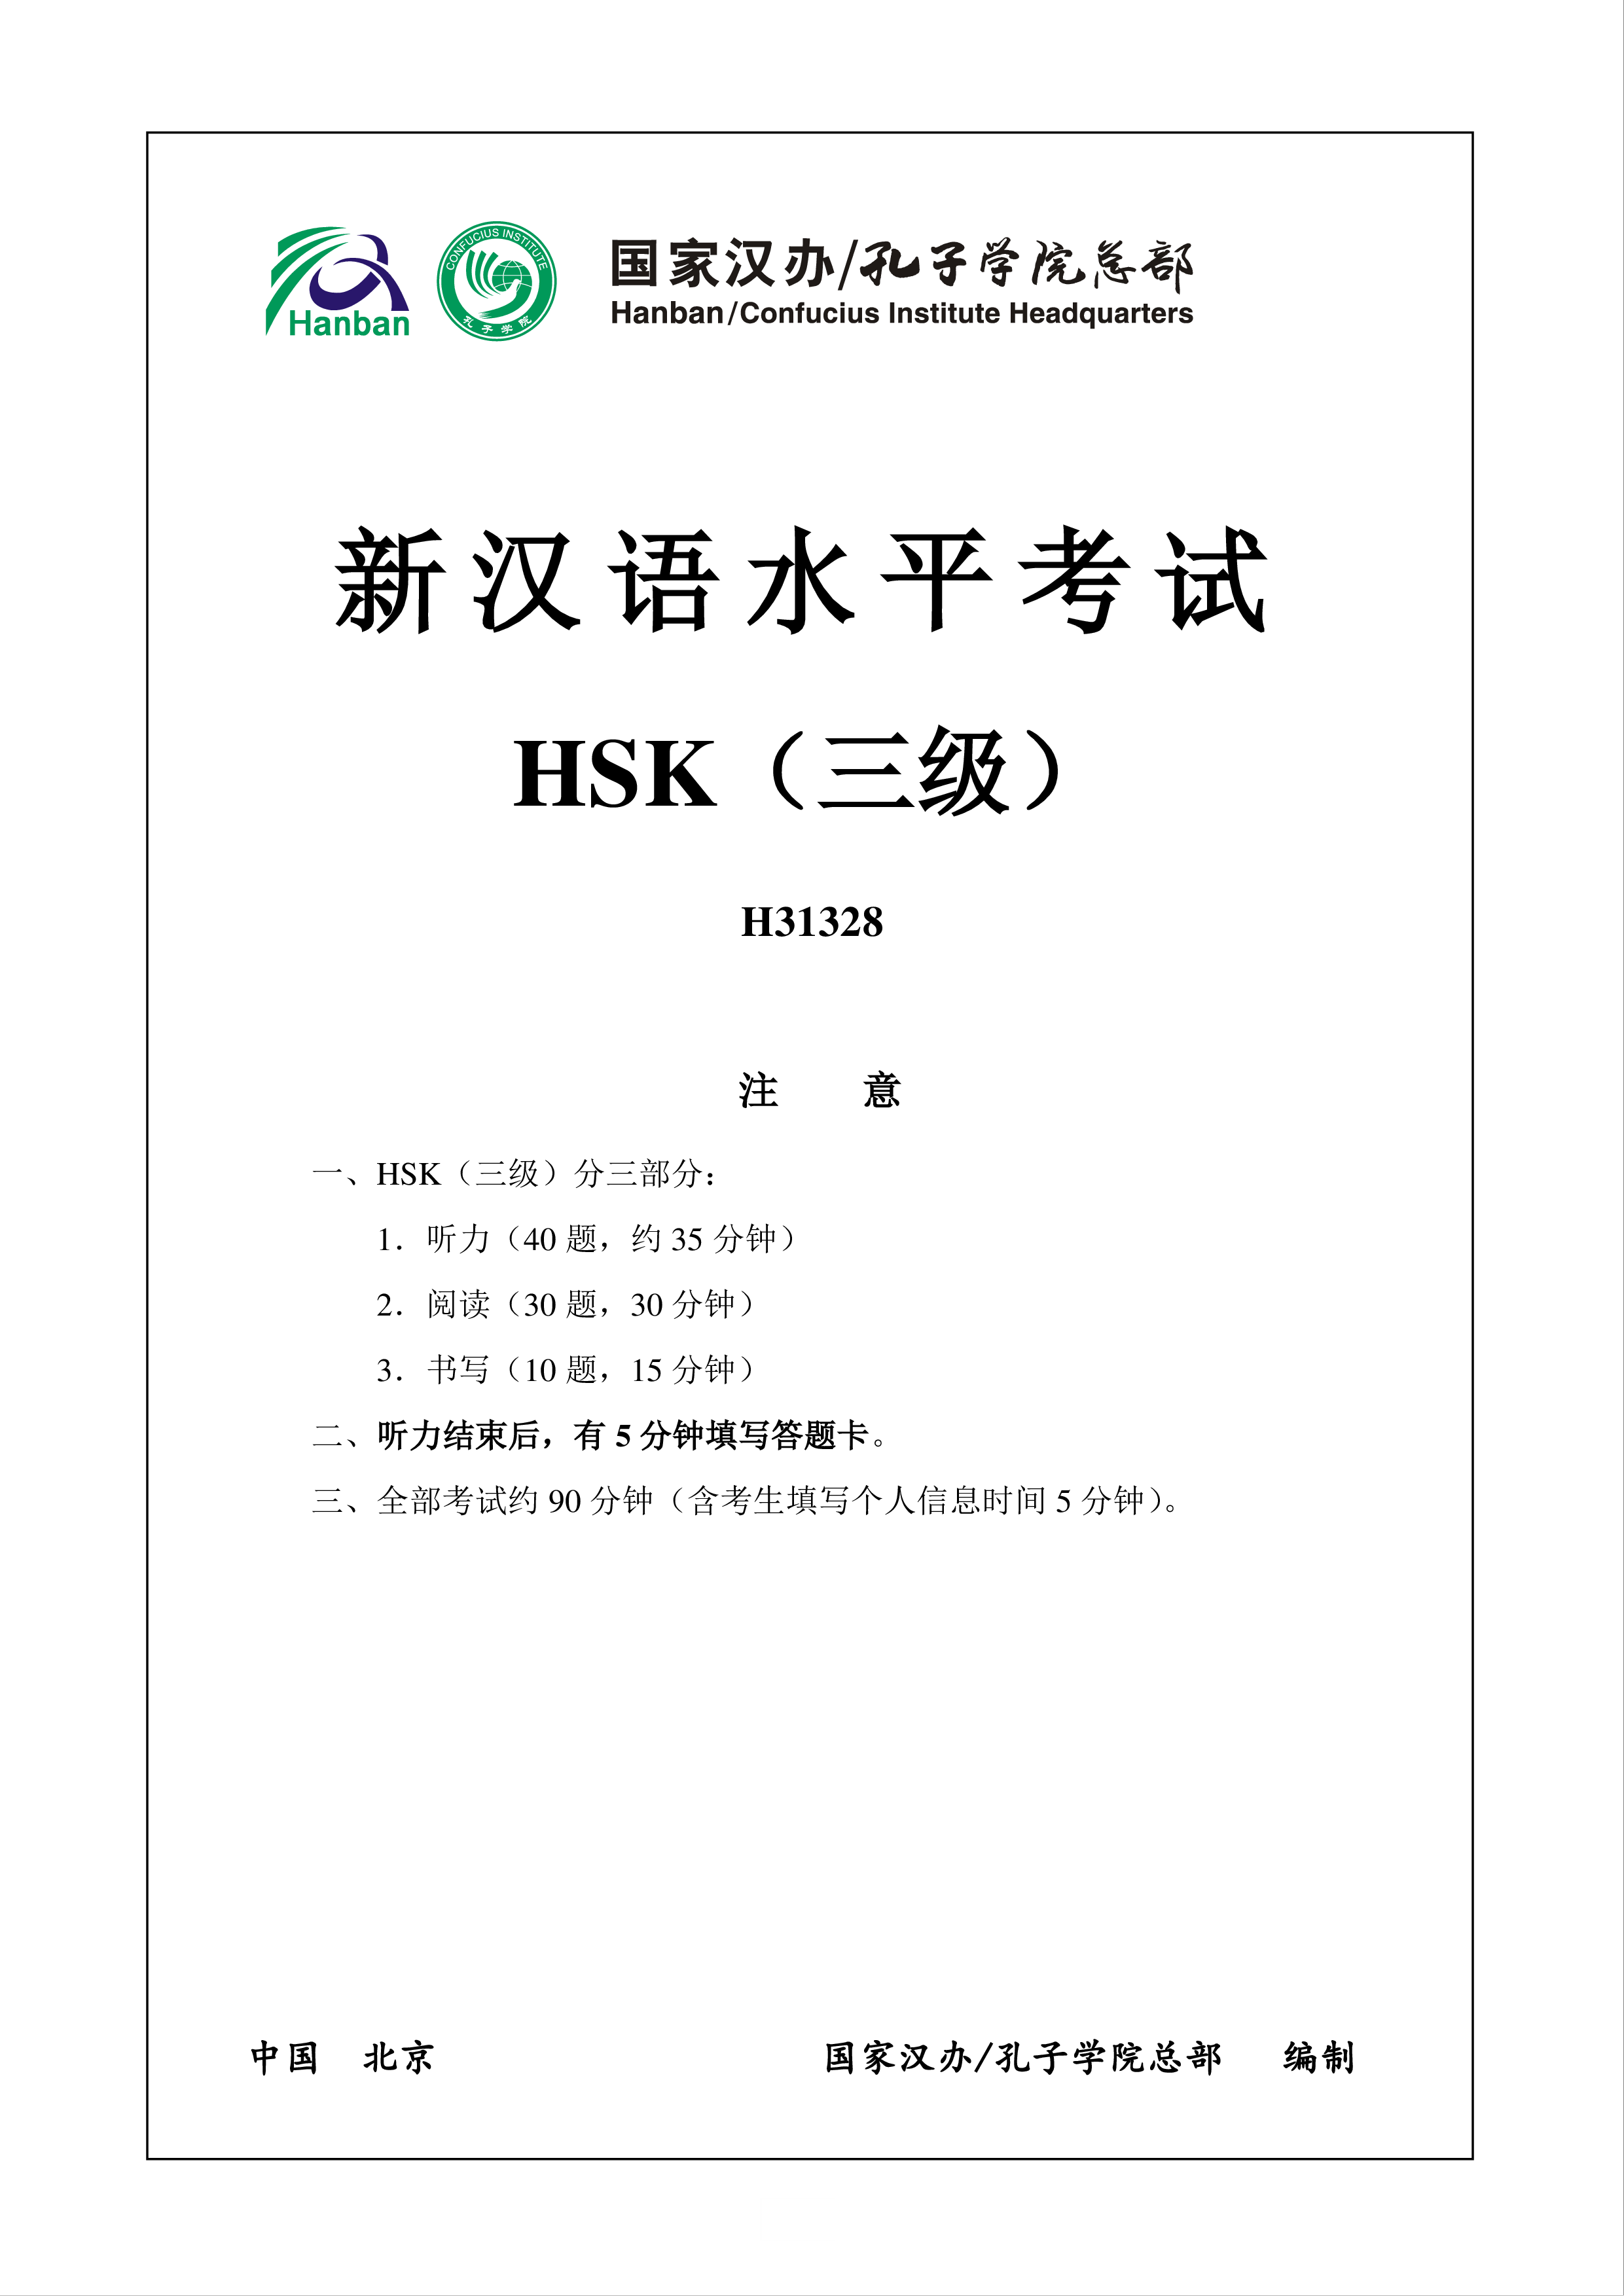 新汉语水平HSK三级考试H31328模拟真题考试音频和答案 模板